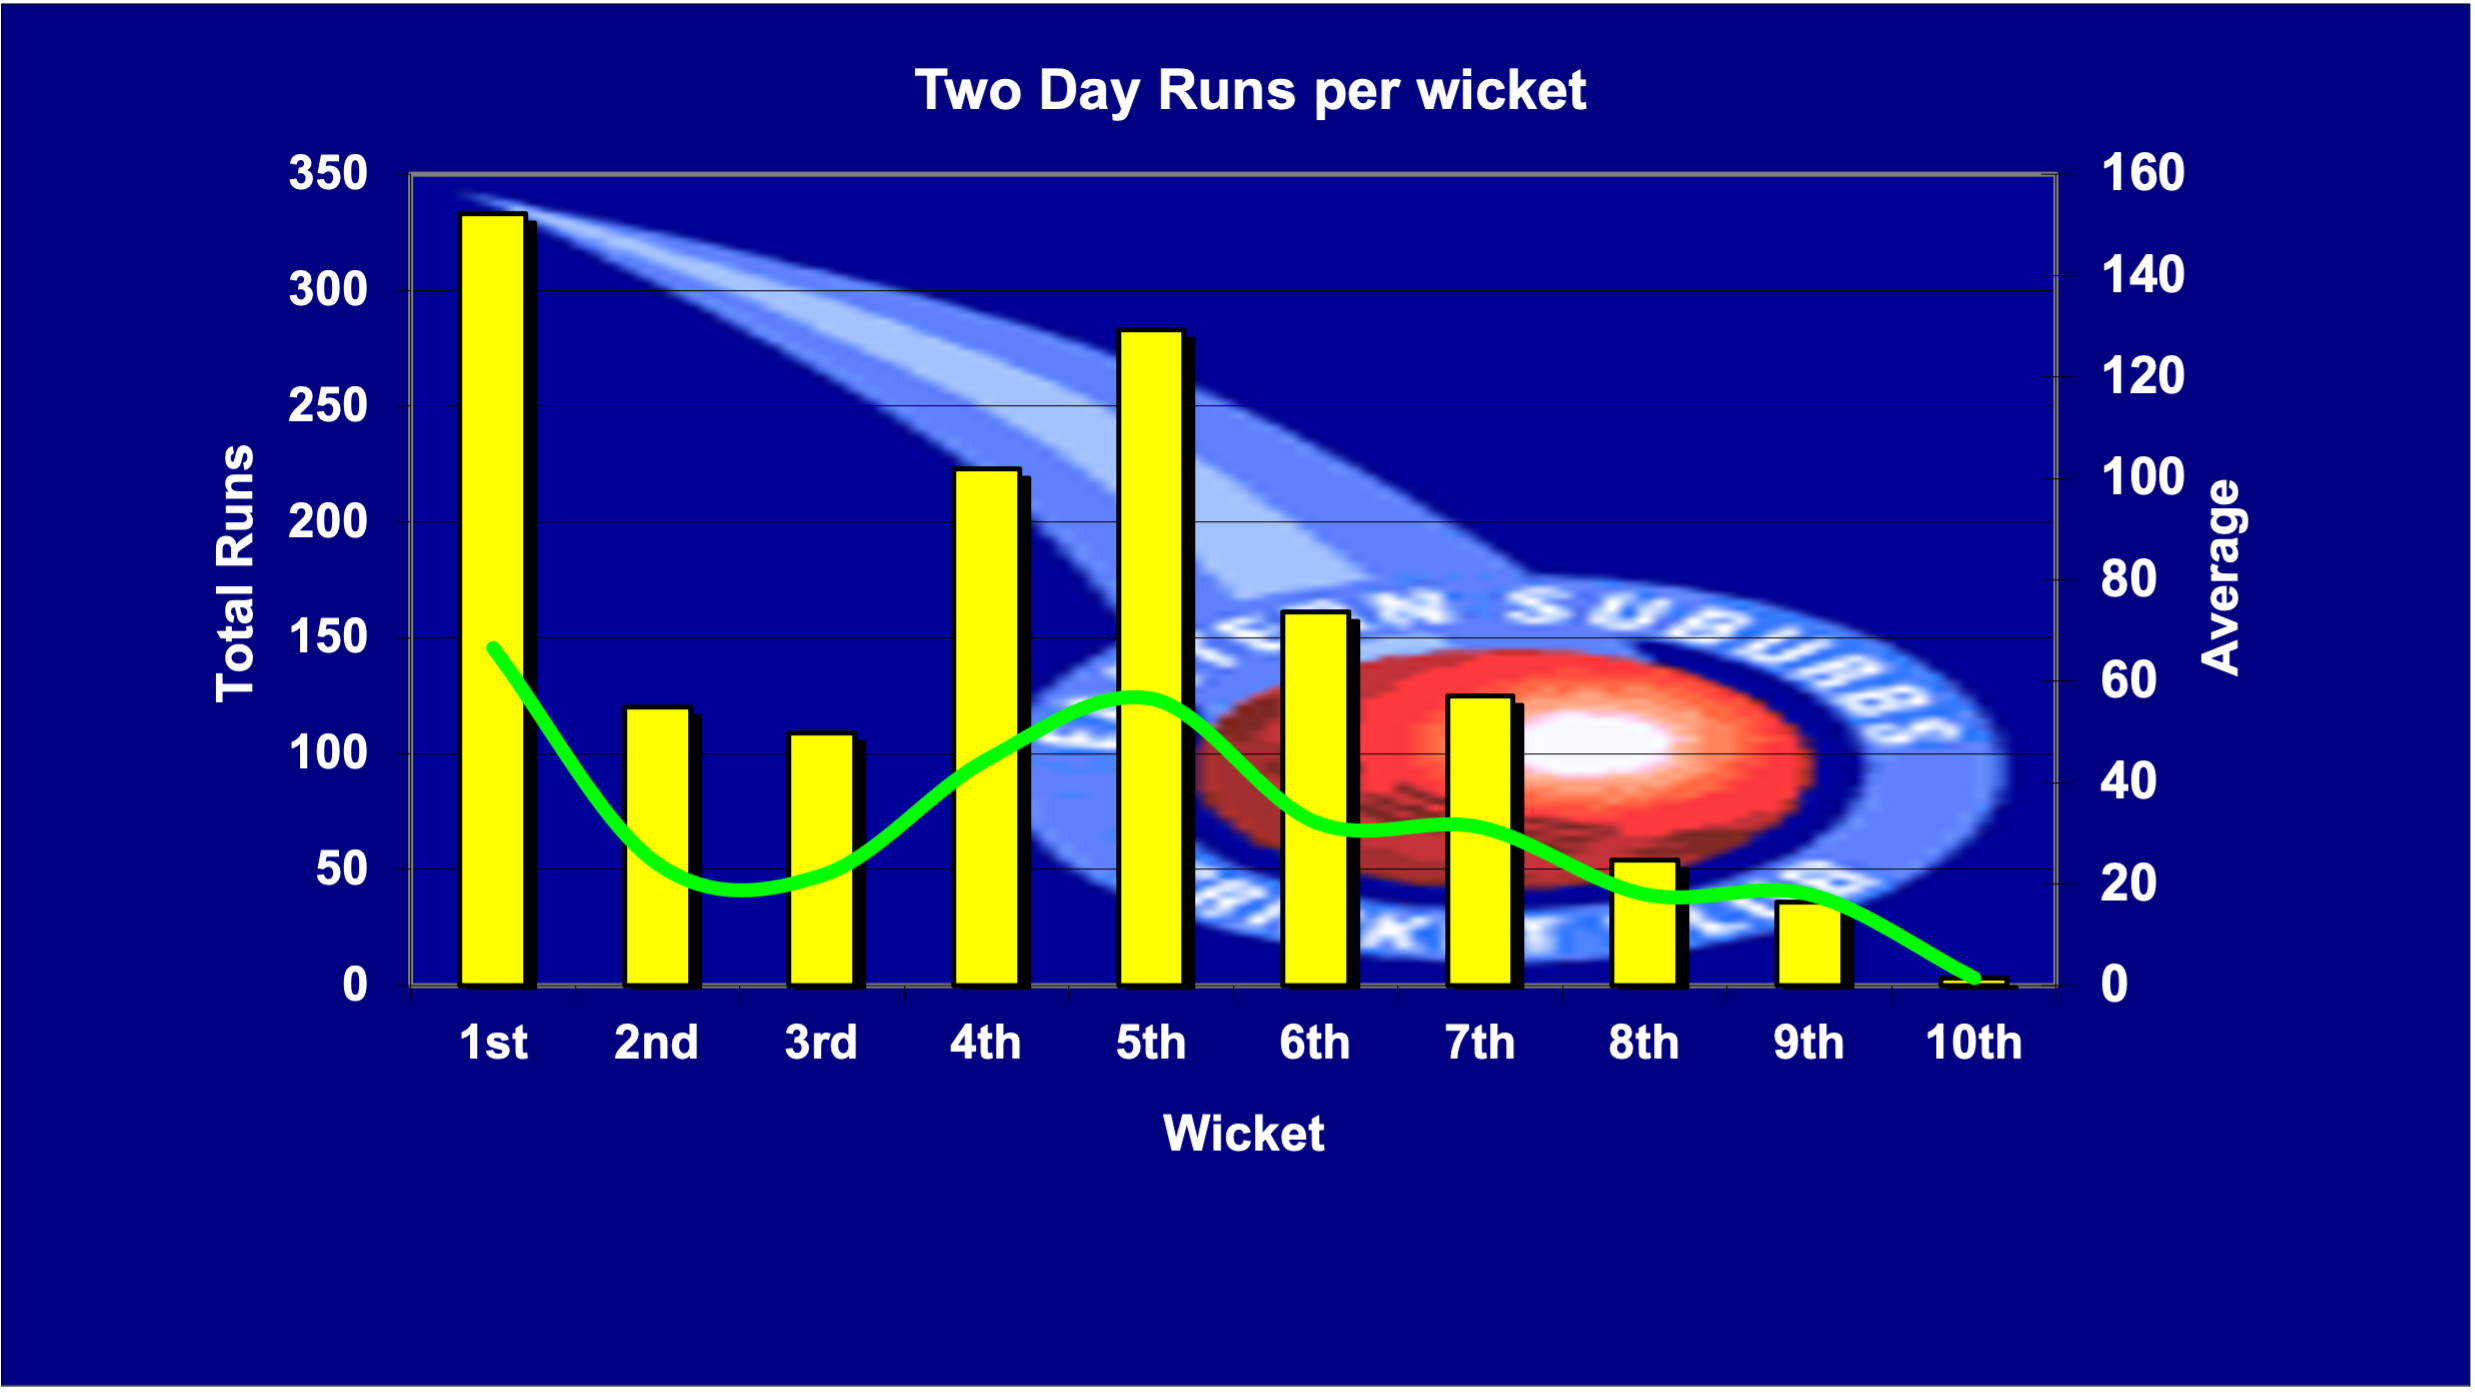 Two Dayer Runs per Wicket